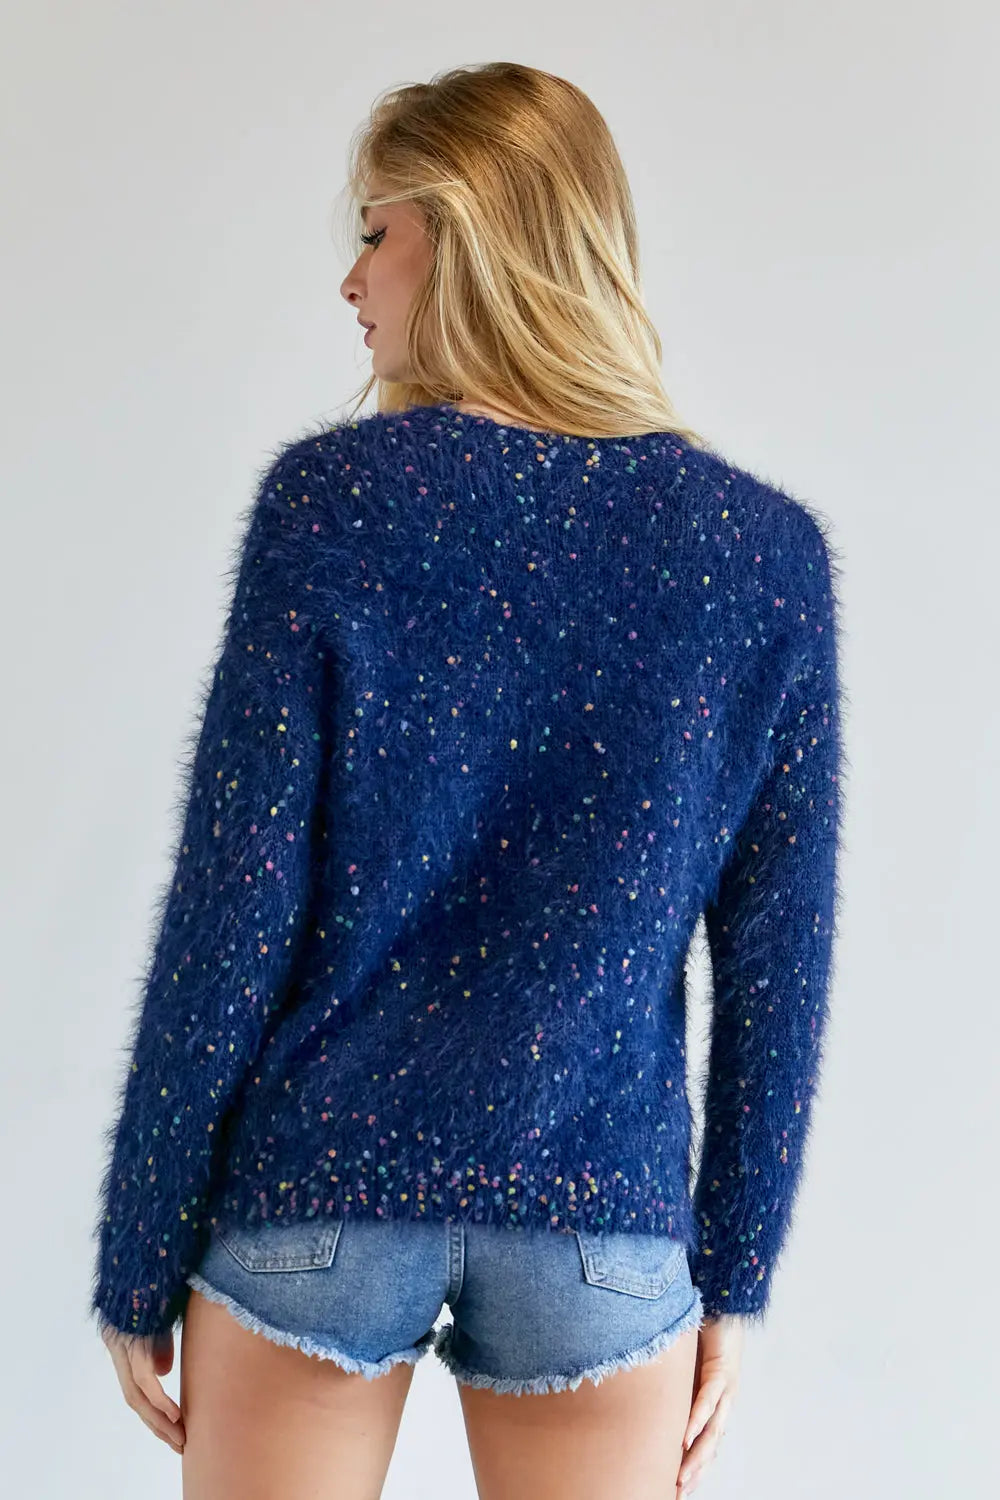 Cute Multi Color Polak Dot Sweater Sunny EvE Fashion